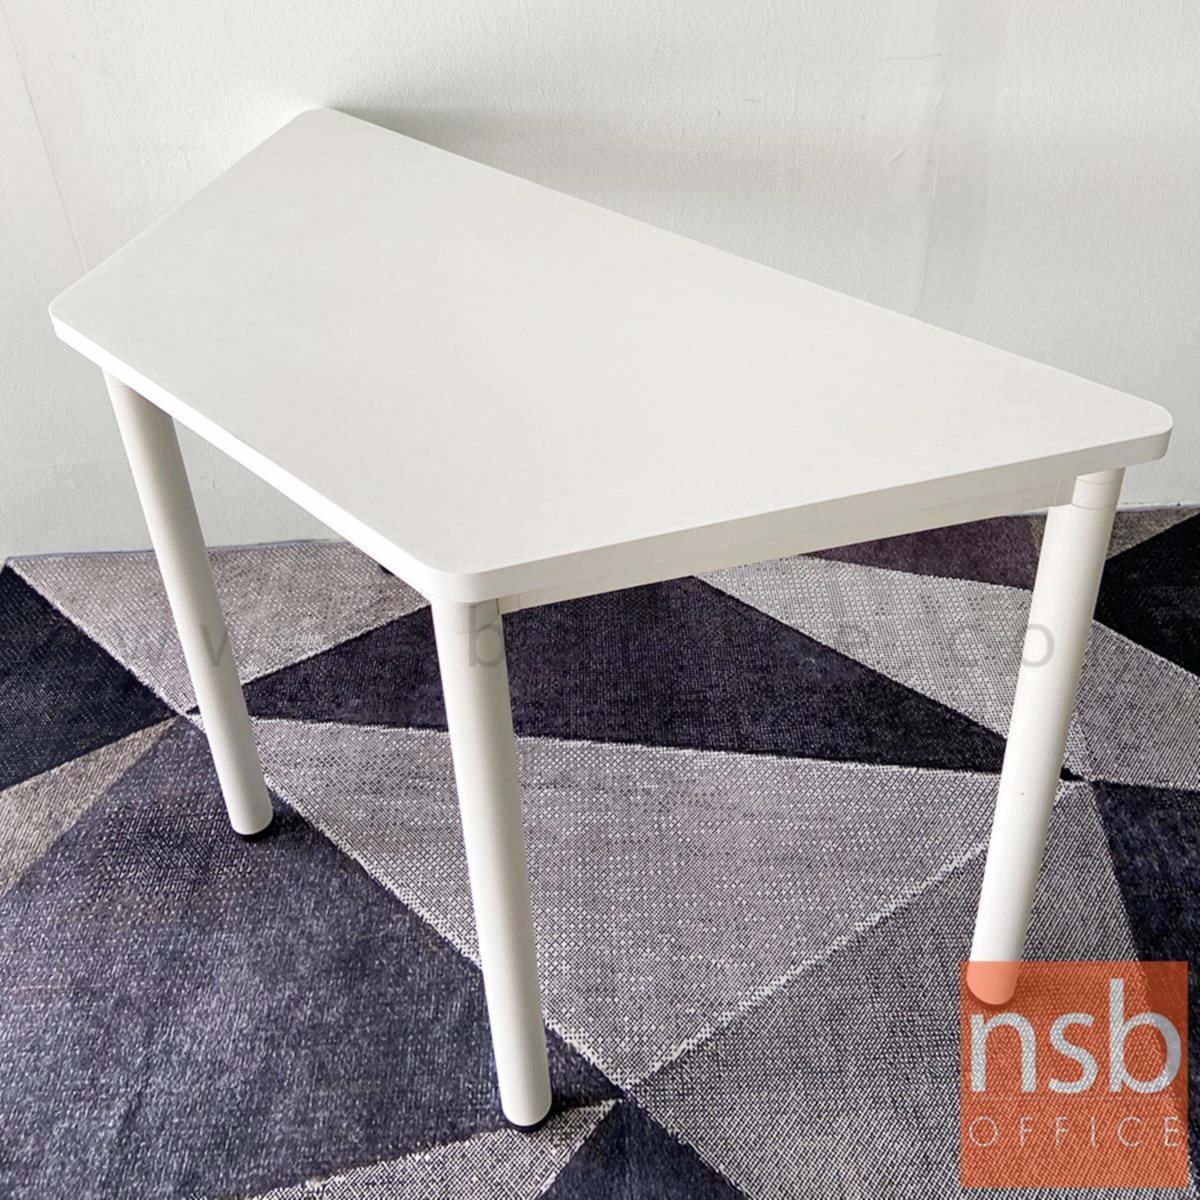 โต๊ะทำงานทรงคางหมู รุ่น Mulrey (มัลเรย์) ขนาด 120W cm.  โครงขาสีขาว 